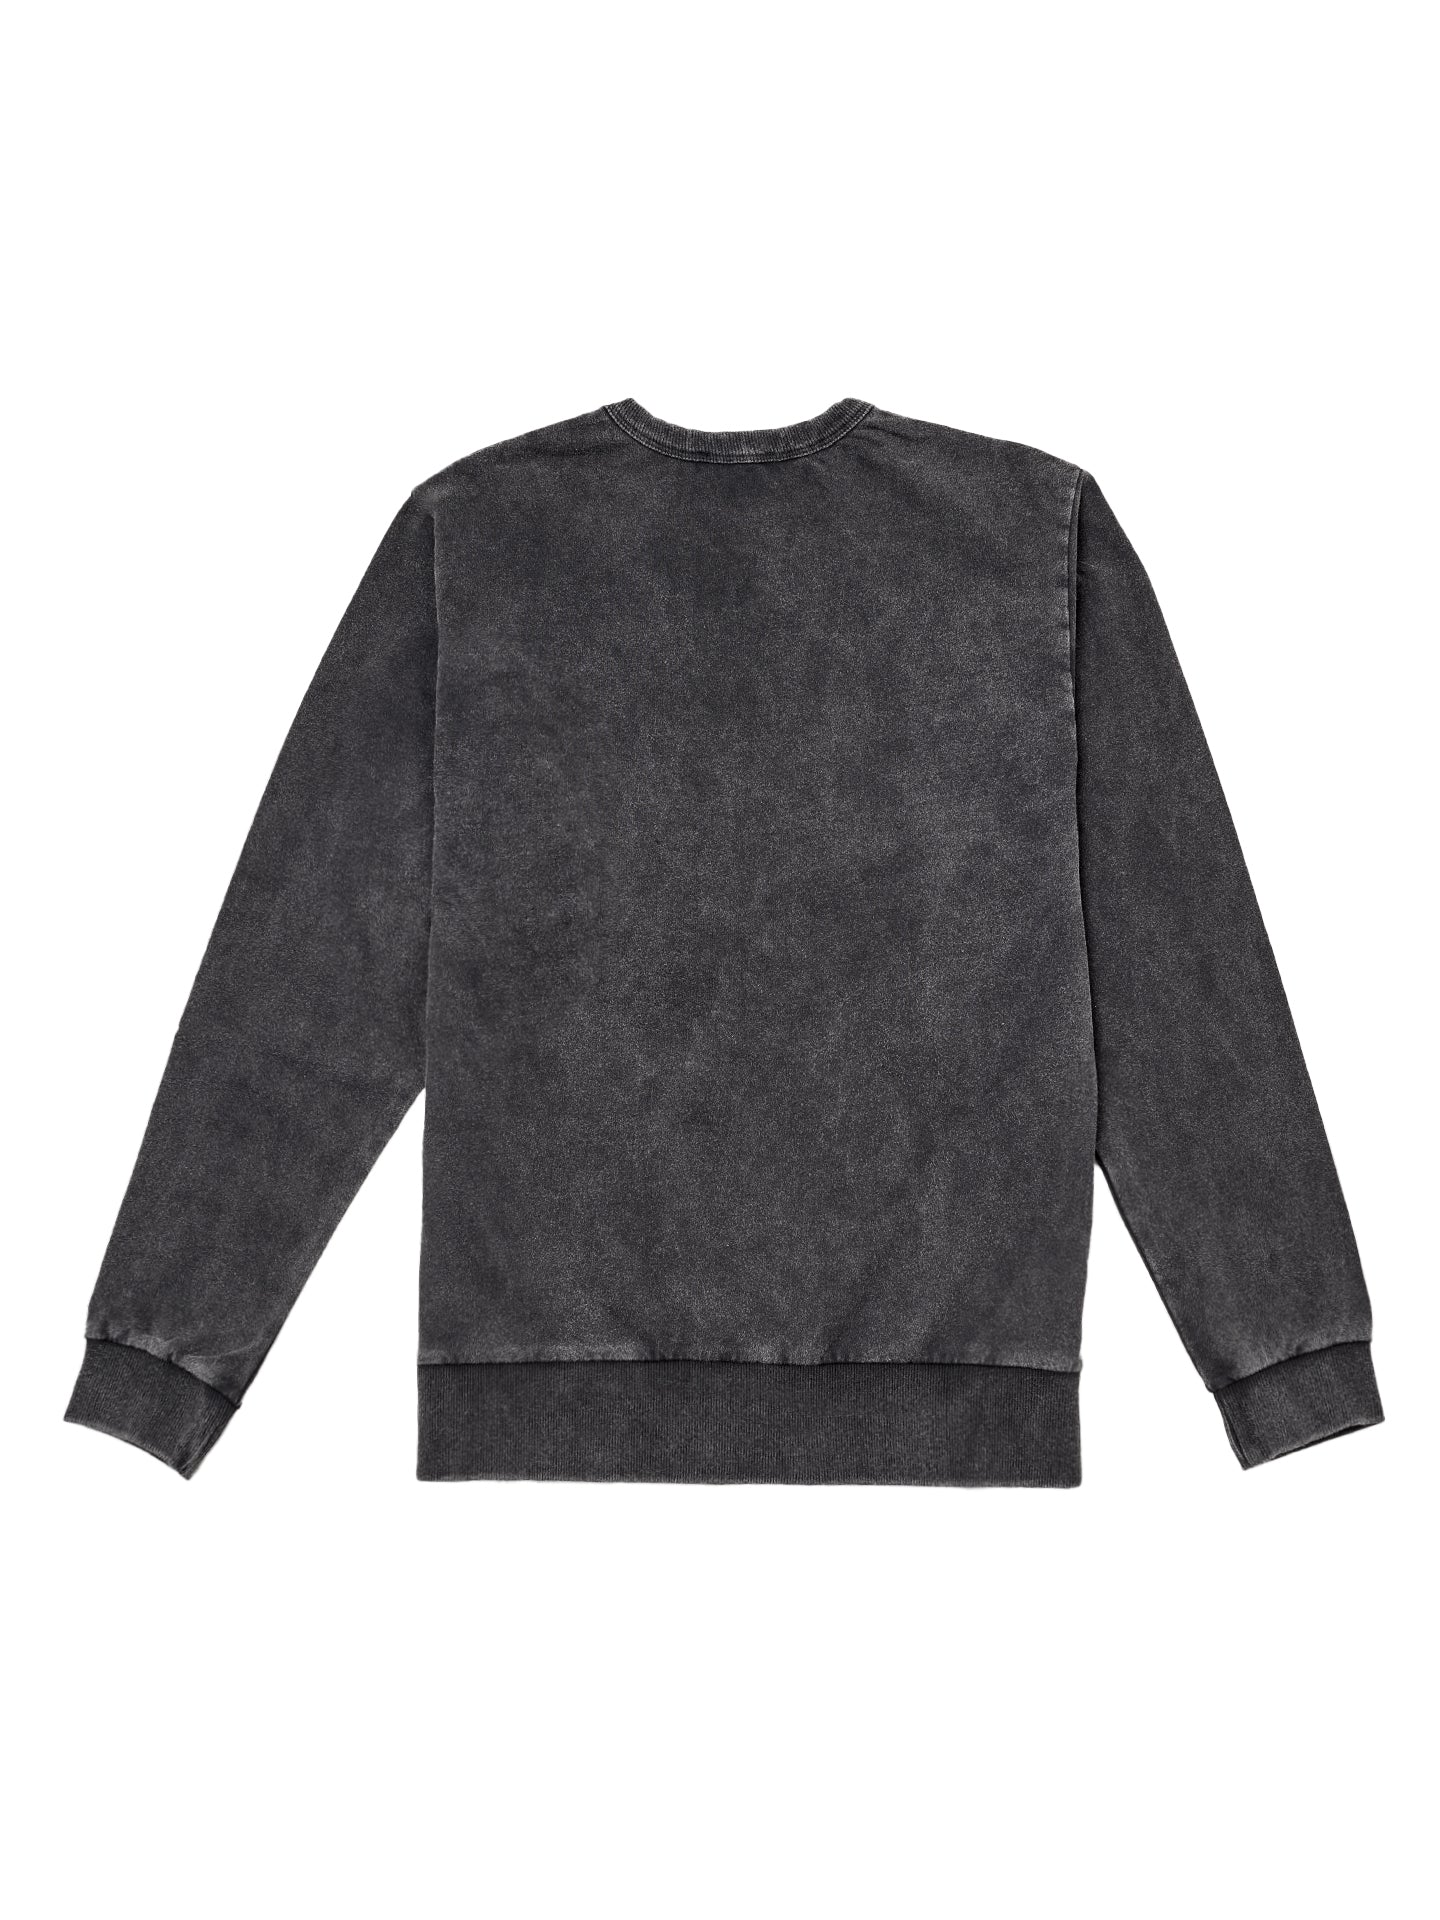 Sweater Men - vintage schwarz